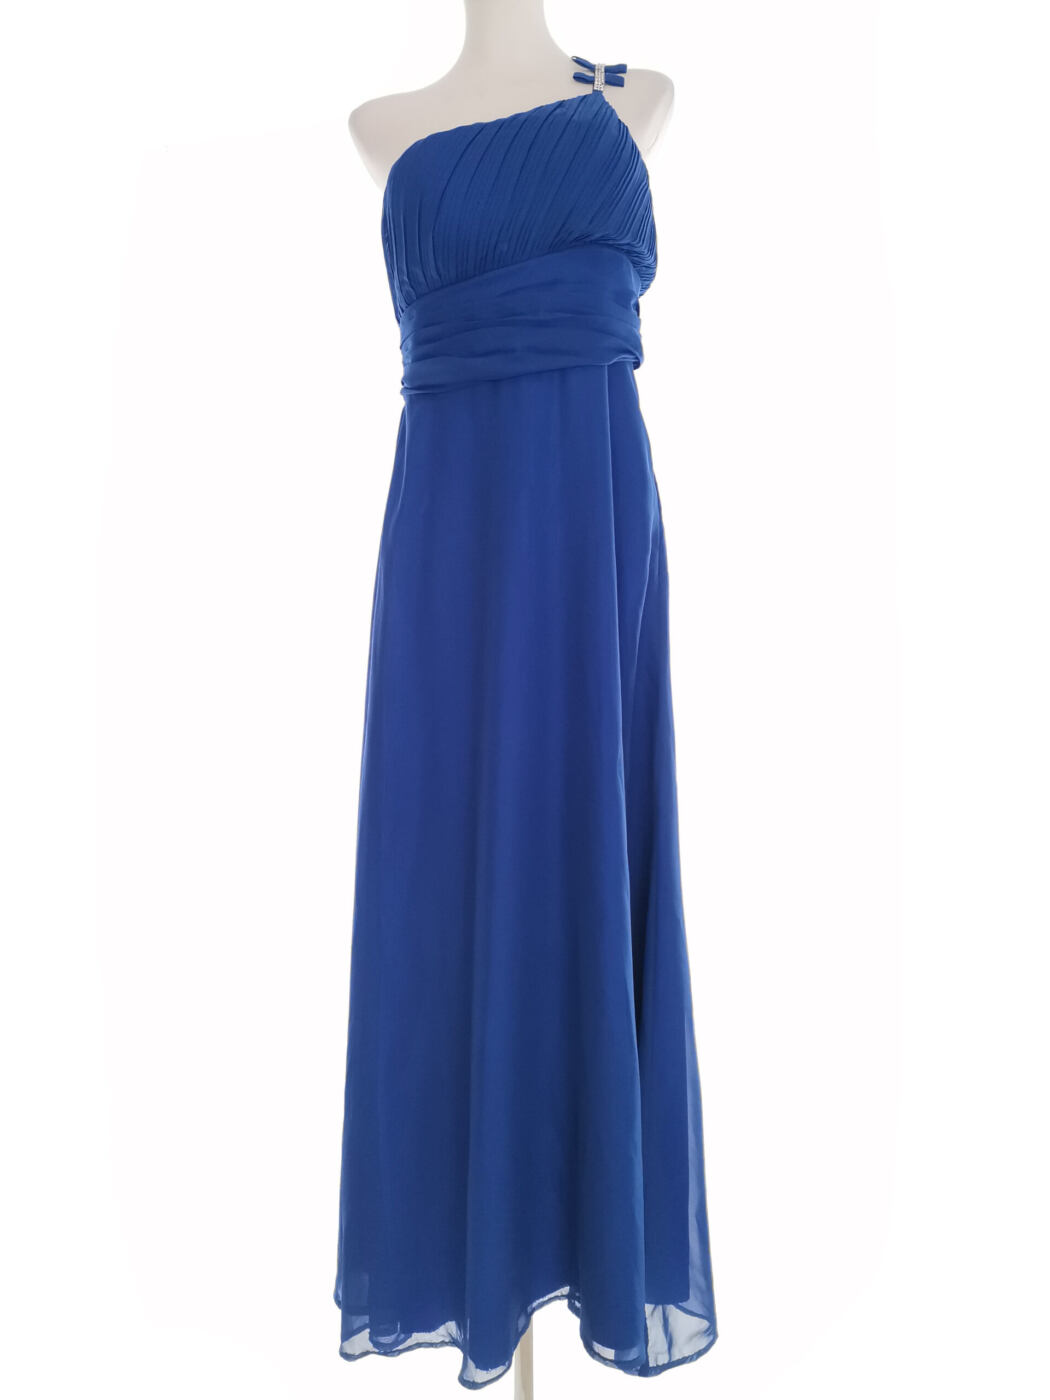 Angel-fashions Rozmiar XL (38/40) Kolor Niebieski Na Jedno Ramię Suknia Balowa Sukienka Wieczorowa Bezrękawnik Długa